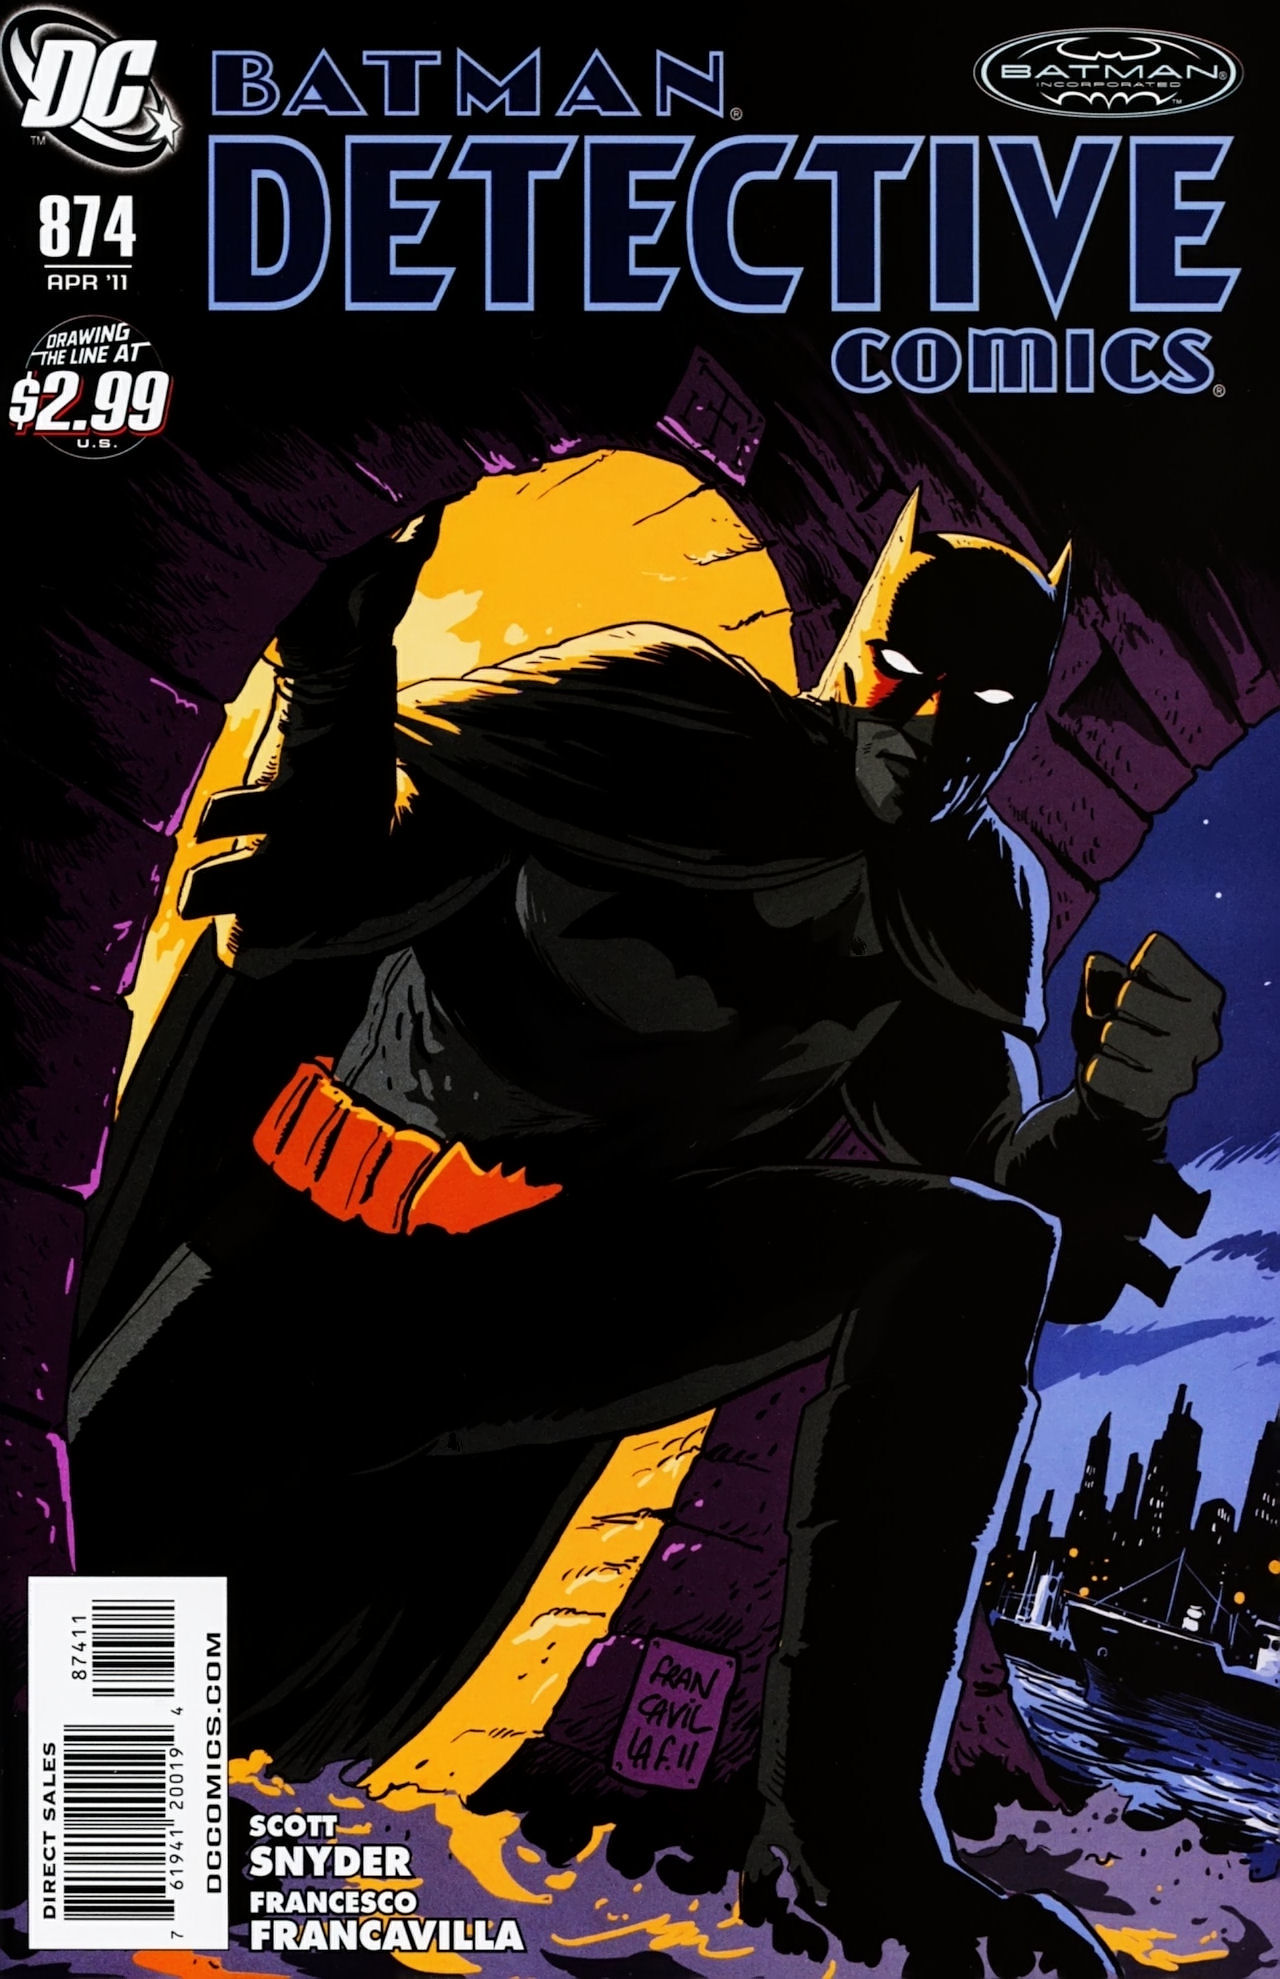 Detective Comics Vol. 1 #874